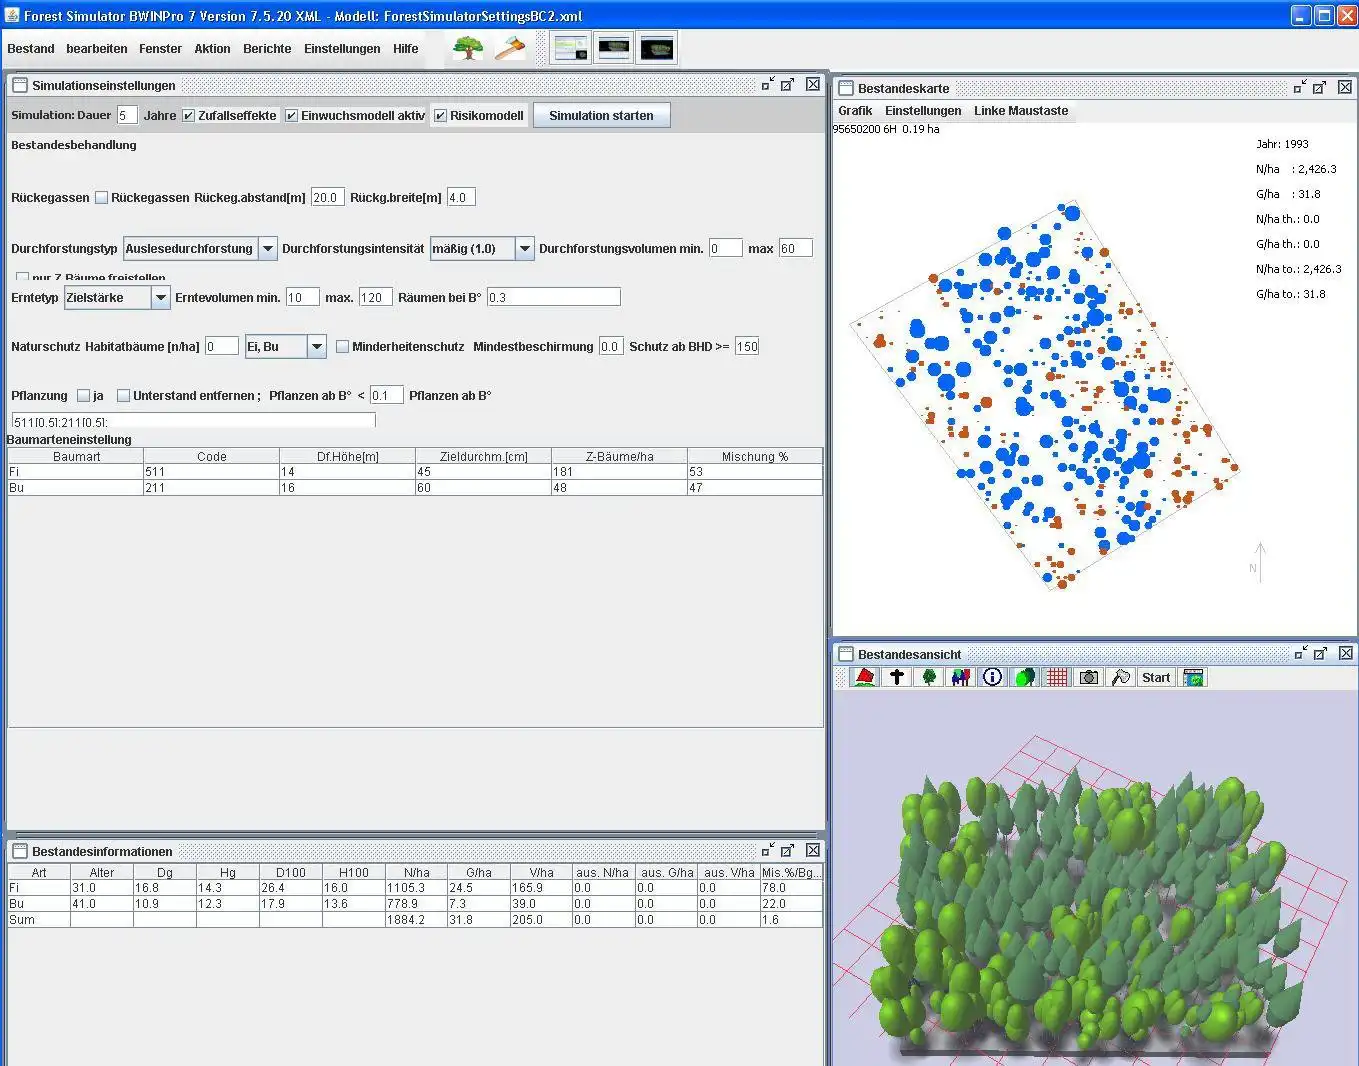 ابزار وب یا برنامه وب TreeGrOSS Forest Growth Simulation را برای اجرا در لینوکس به صورت آنلاین دانلود کنید